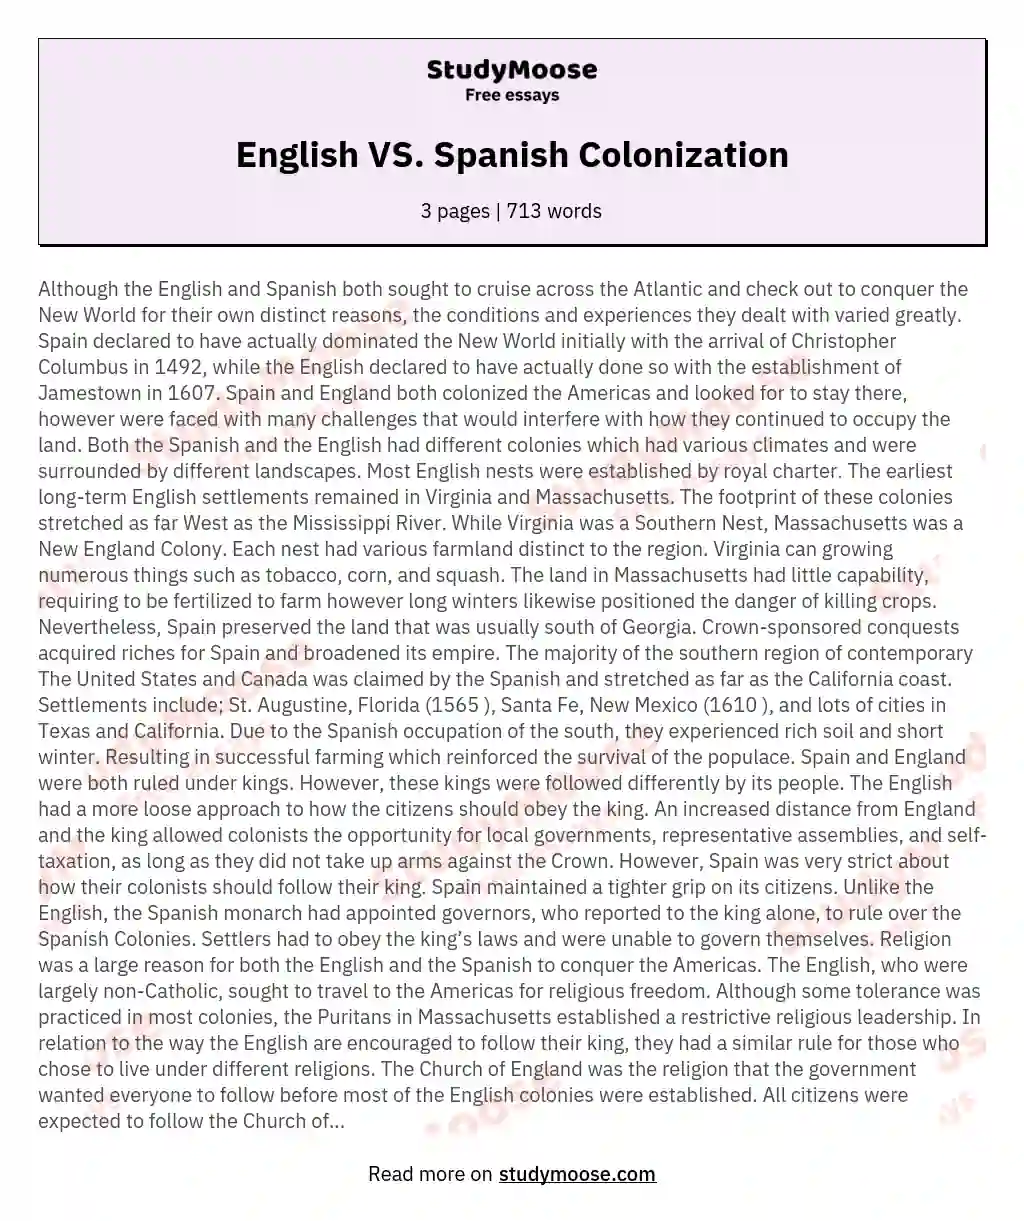 English VS. Spanish Colonization